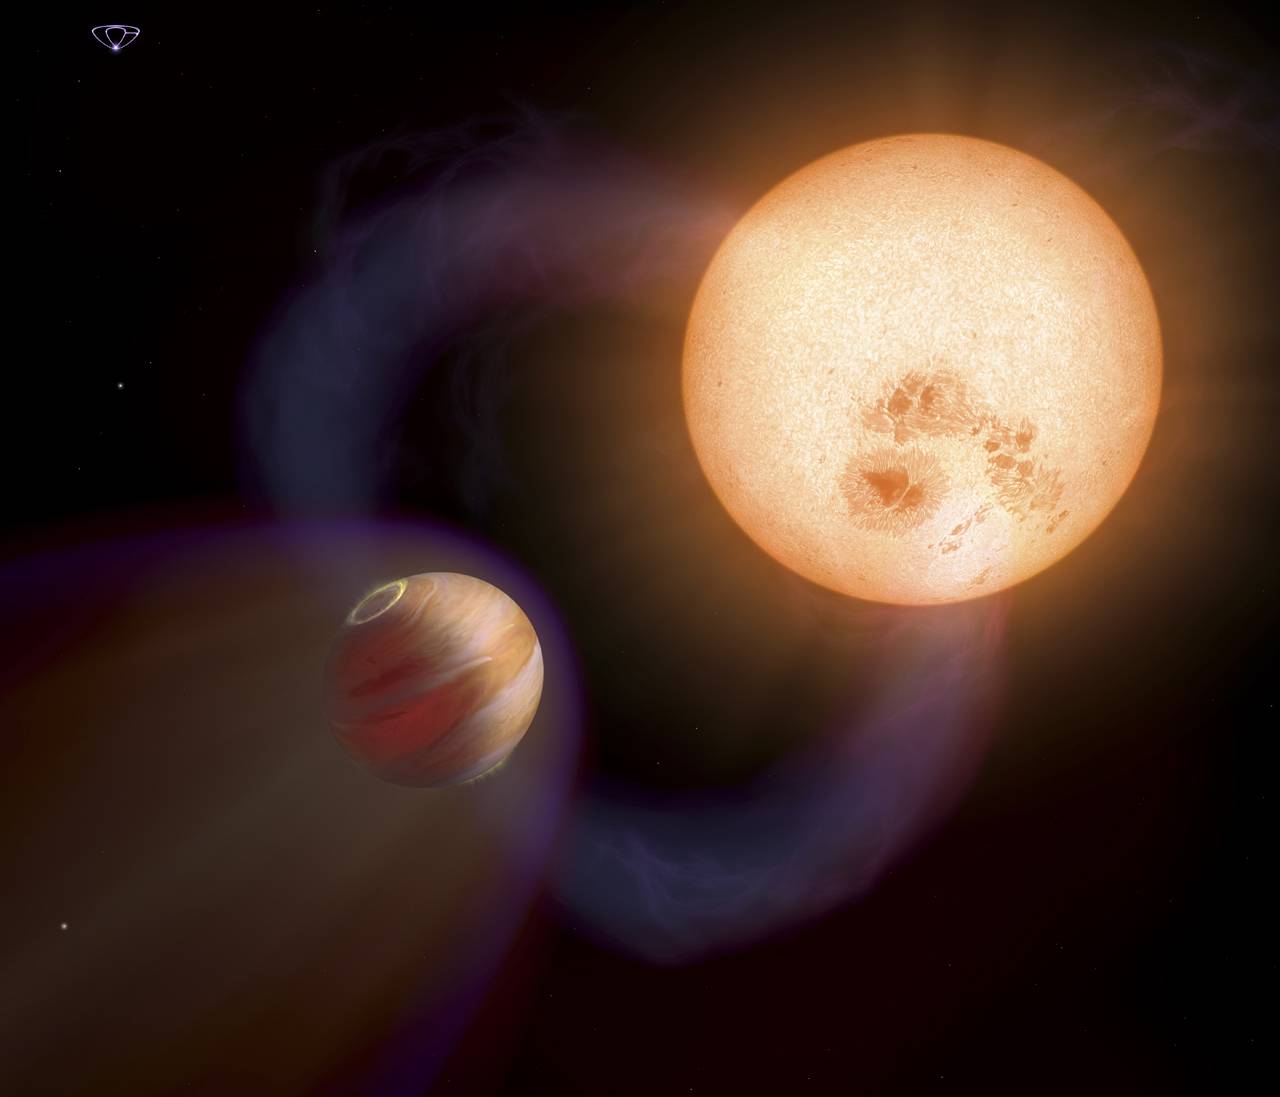 Recreación de un 'Júpiter caliente' similar a WTS-1b, pero con una órbita más rápida y cercana a su estrella, descubierto por el Hubble. Imagen: NASA, ESA, A. Schaller.